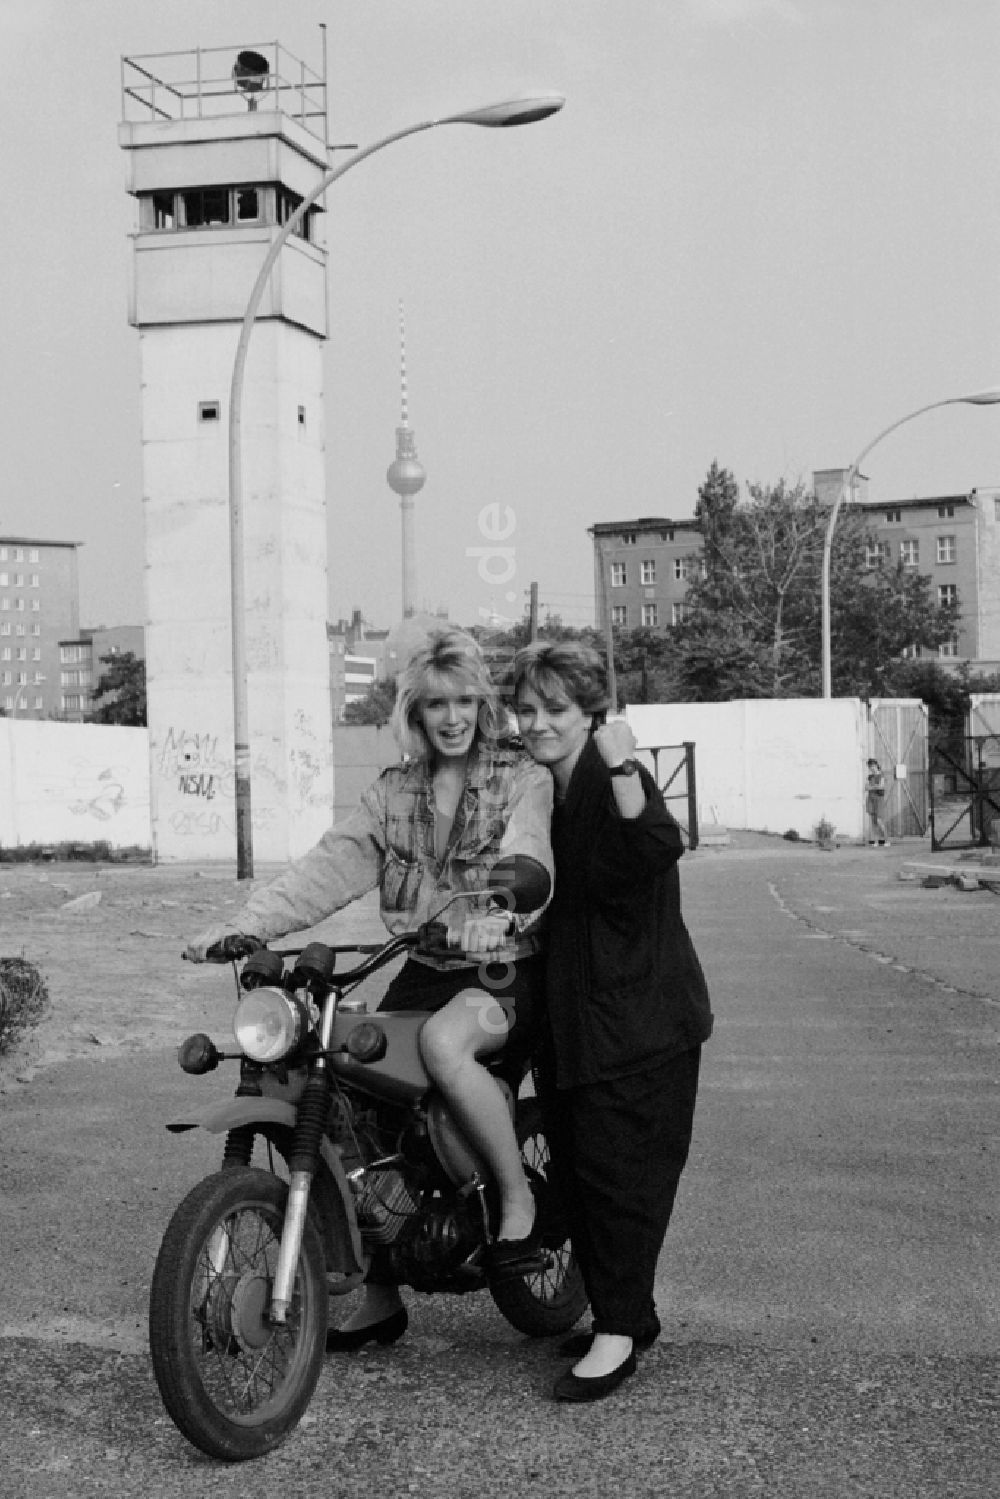 DDR-Fotoarchiv: Berlin - Moped vom Typ S50 mit jungen Frauen im ehemaligen Mauerstreifen an der Bernauer Straße in Berlin auf dem Gebiet der ehemaligen DDR, Deutsche Demokratische Republik